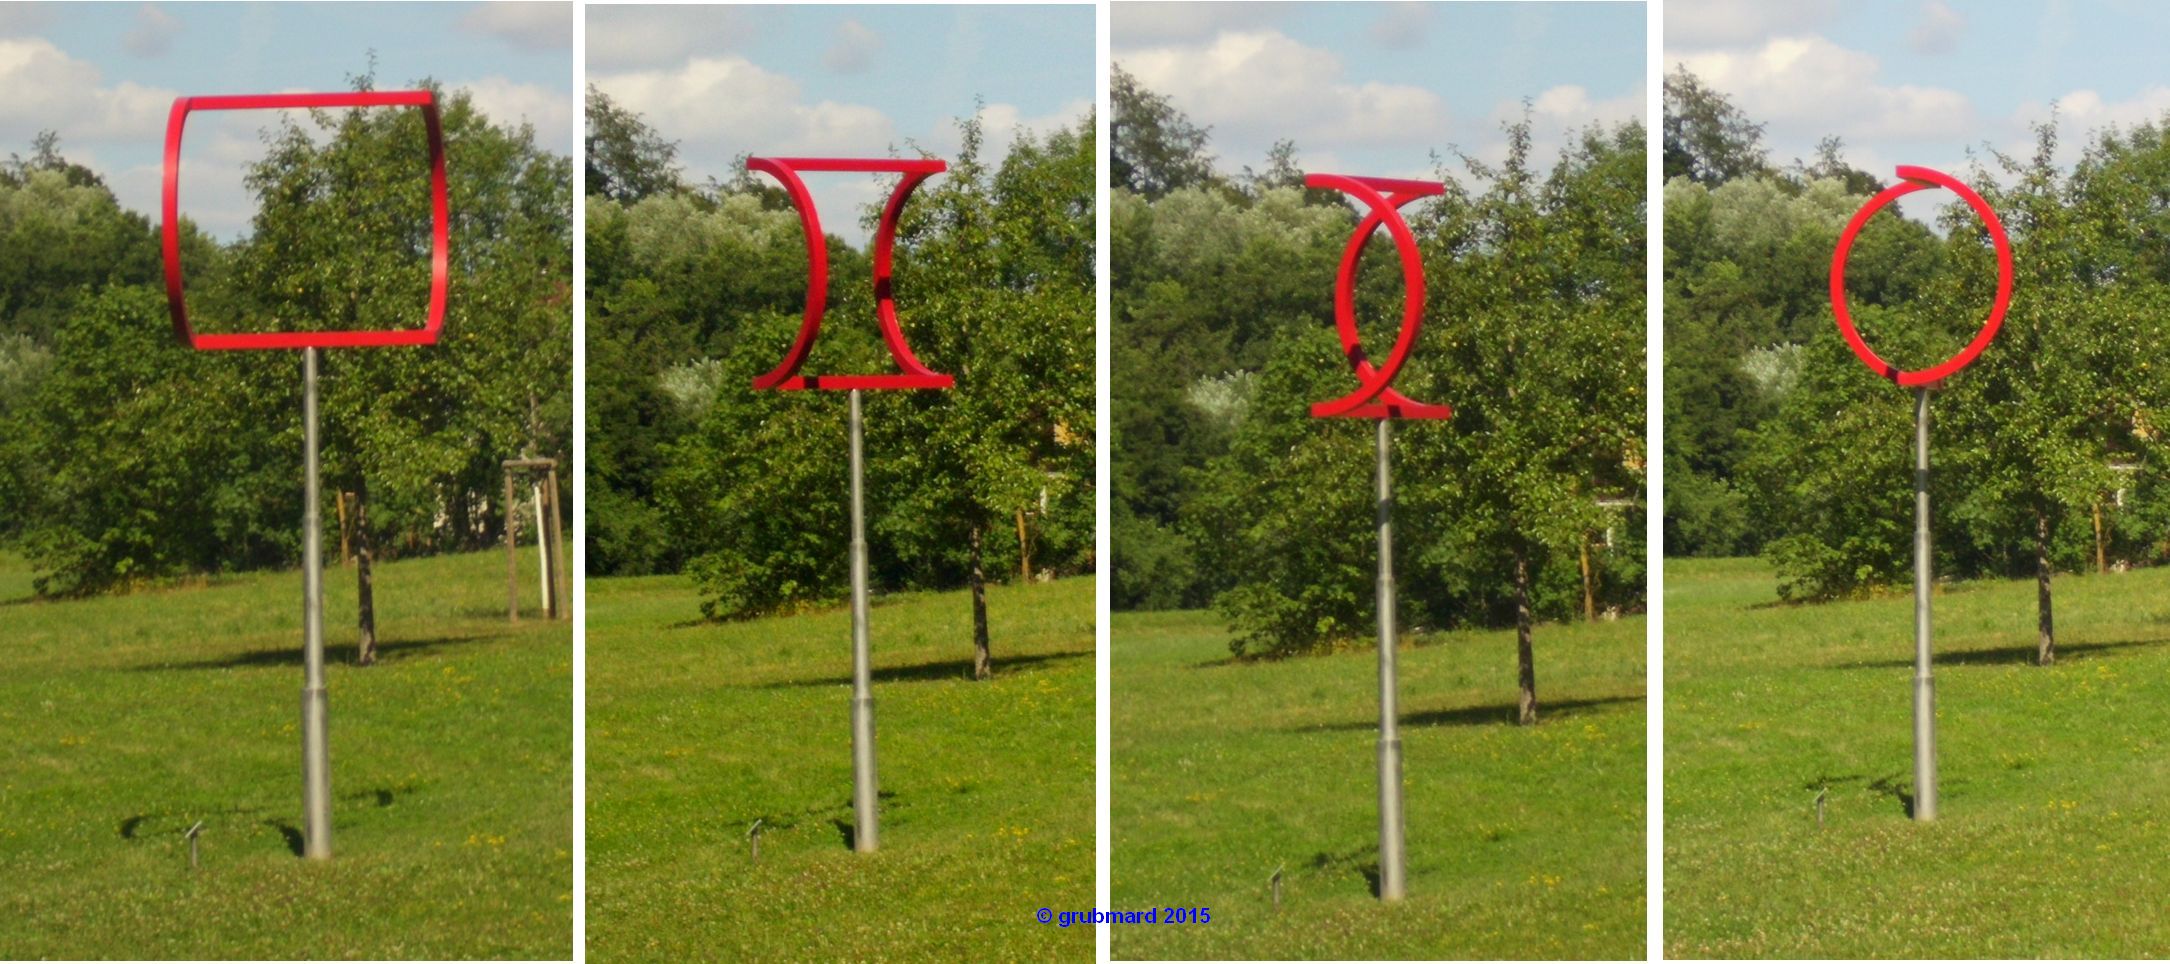 Moderne Kunst im Park des Besucherzentrums:
"Quadratur des Kreises" von Tim Ulrichs